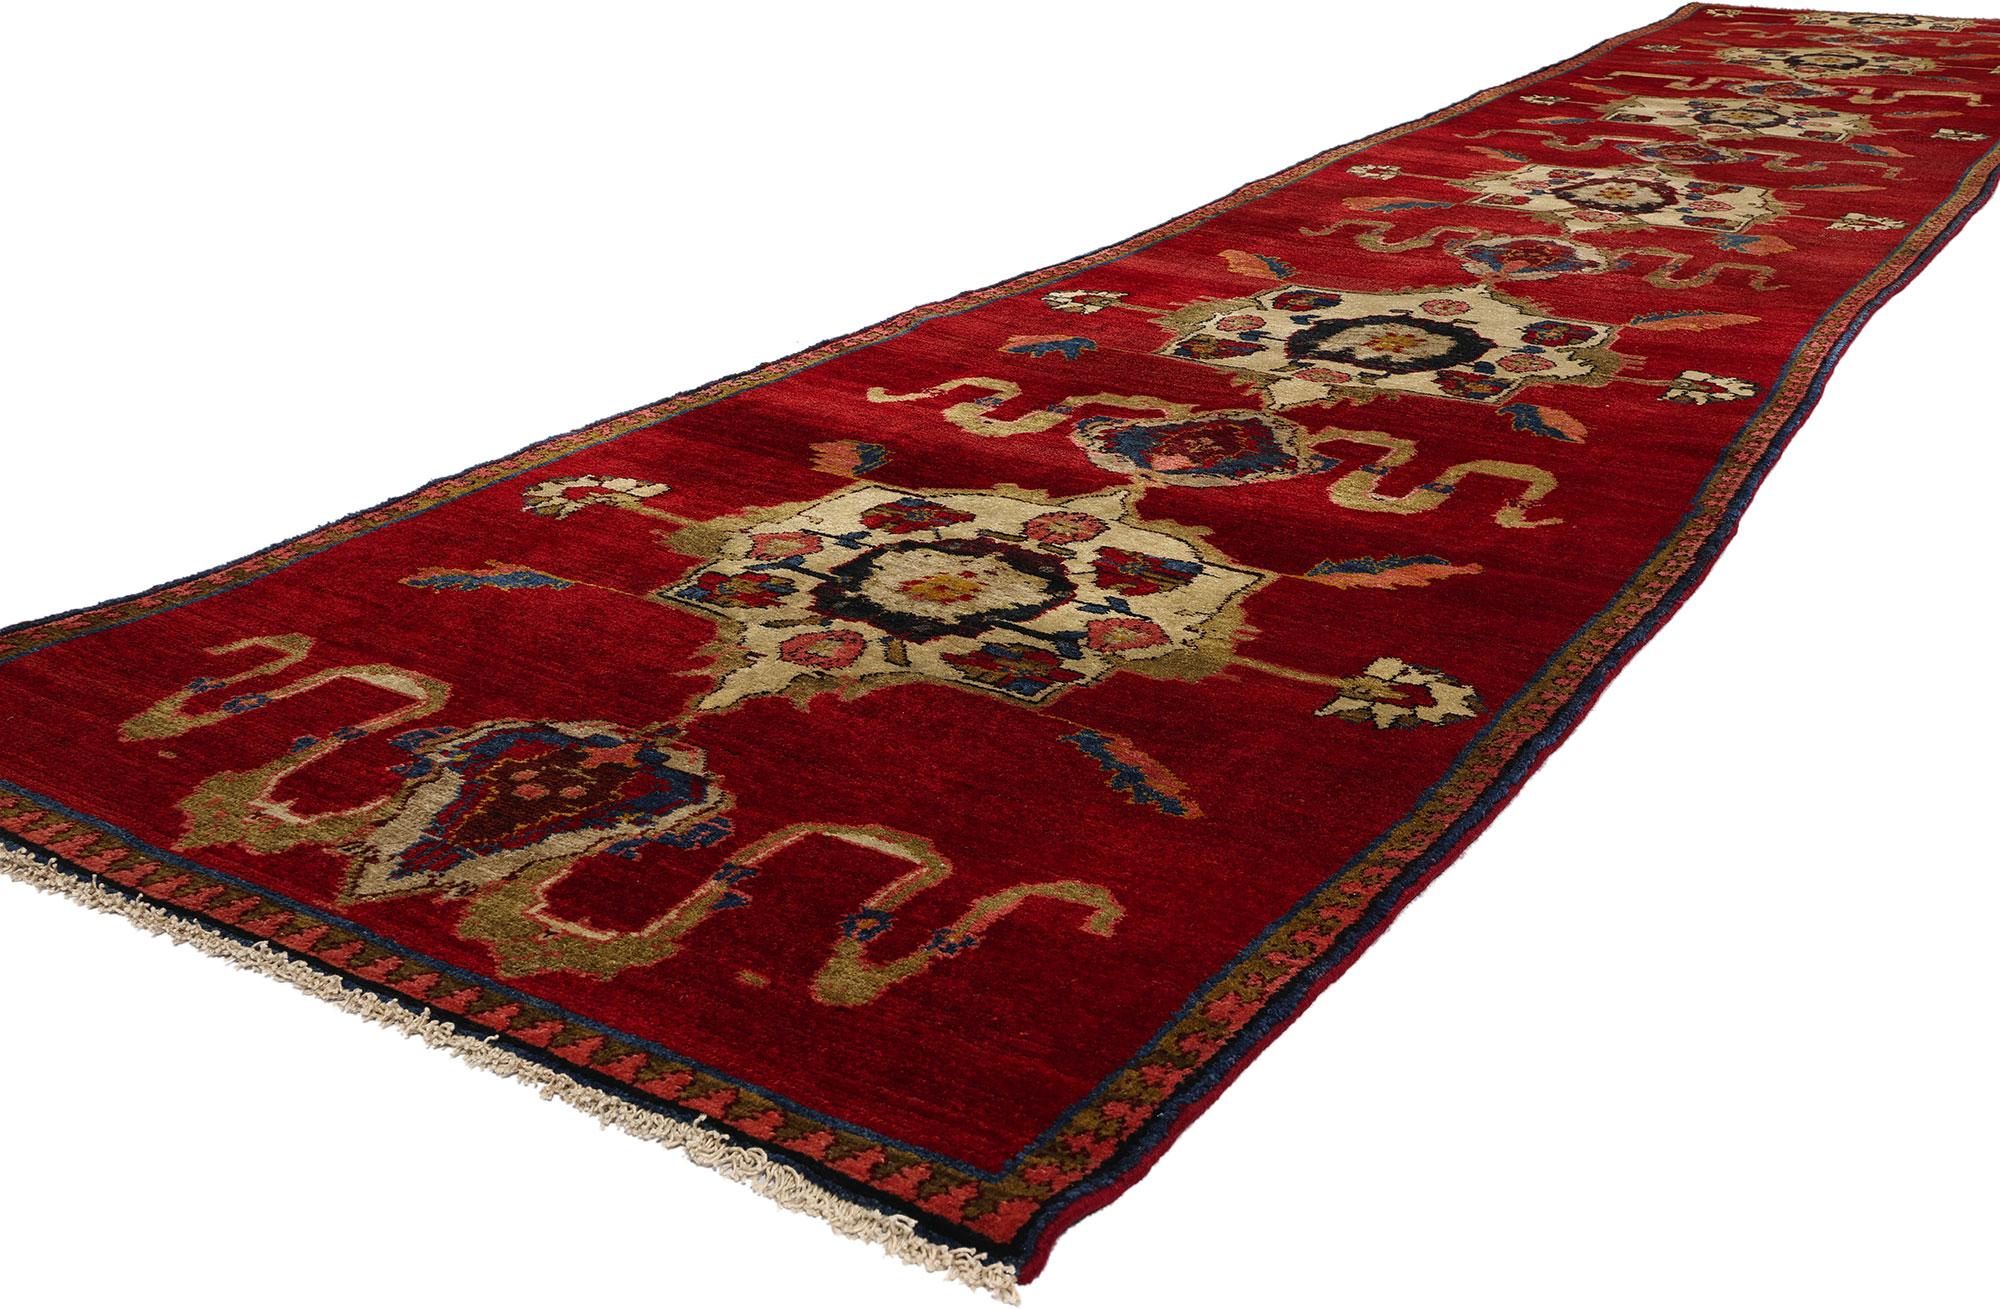 53870 Vintage Red Turkish Oushak Rug Runner, 03'01 x 17'03. Türkische Oushak-Teppichläufer sind lange, schmale Teppiche, die in der Oushak-Region der Westtürkei gewebt werden. Diese Läufer weisen typischerweise die charakteristischen Muster und